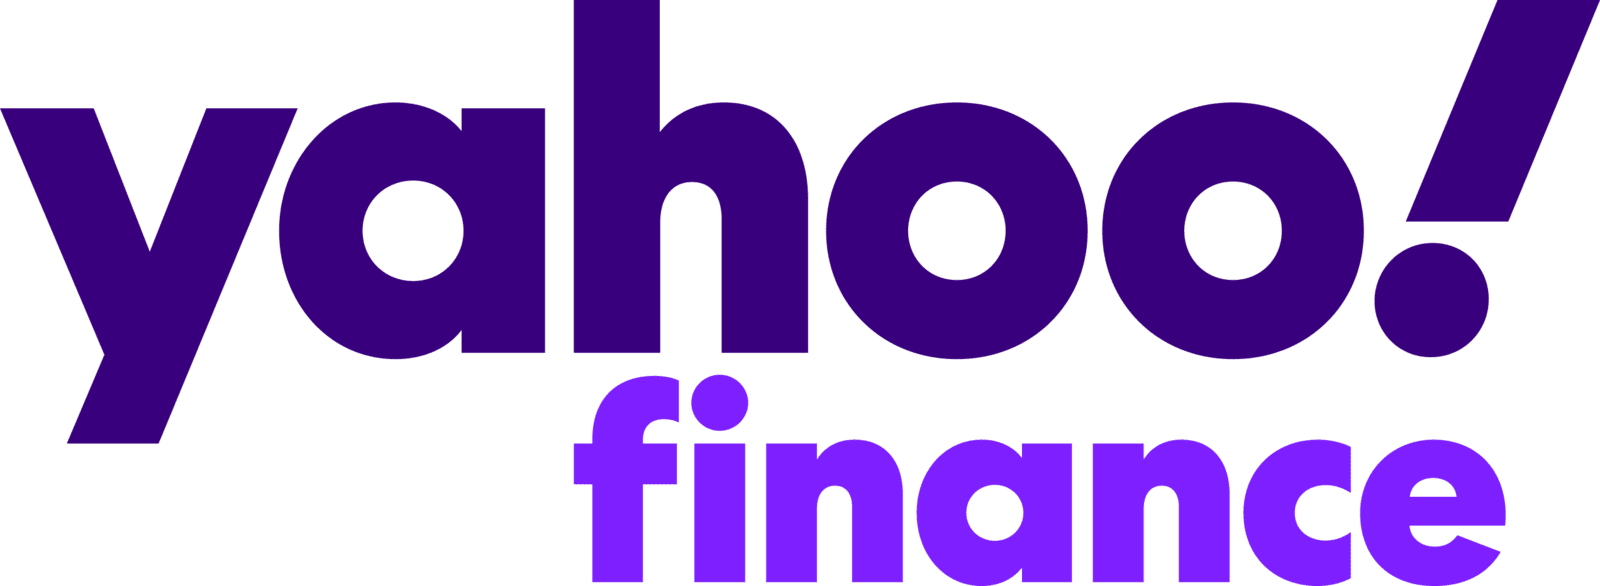 yahoo_finance_logo_2021